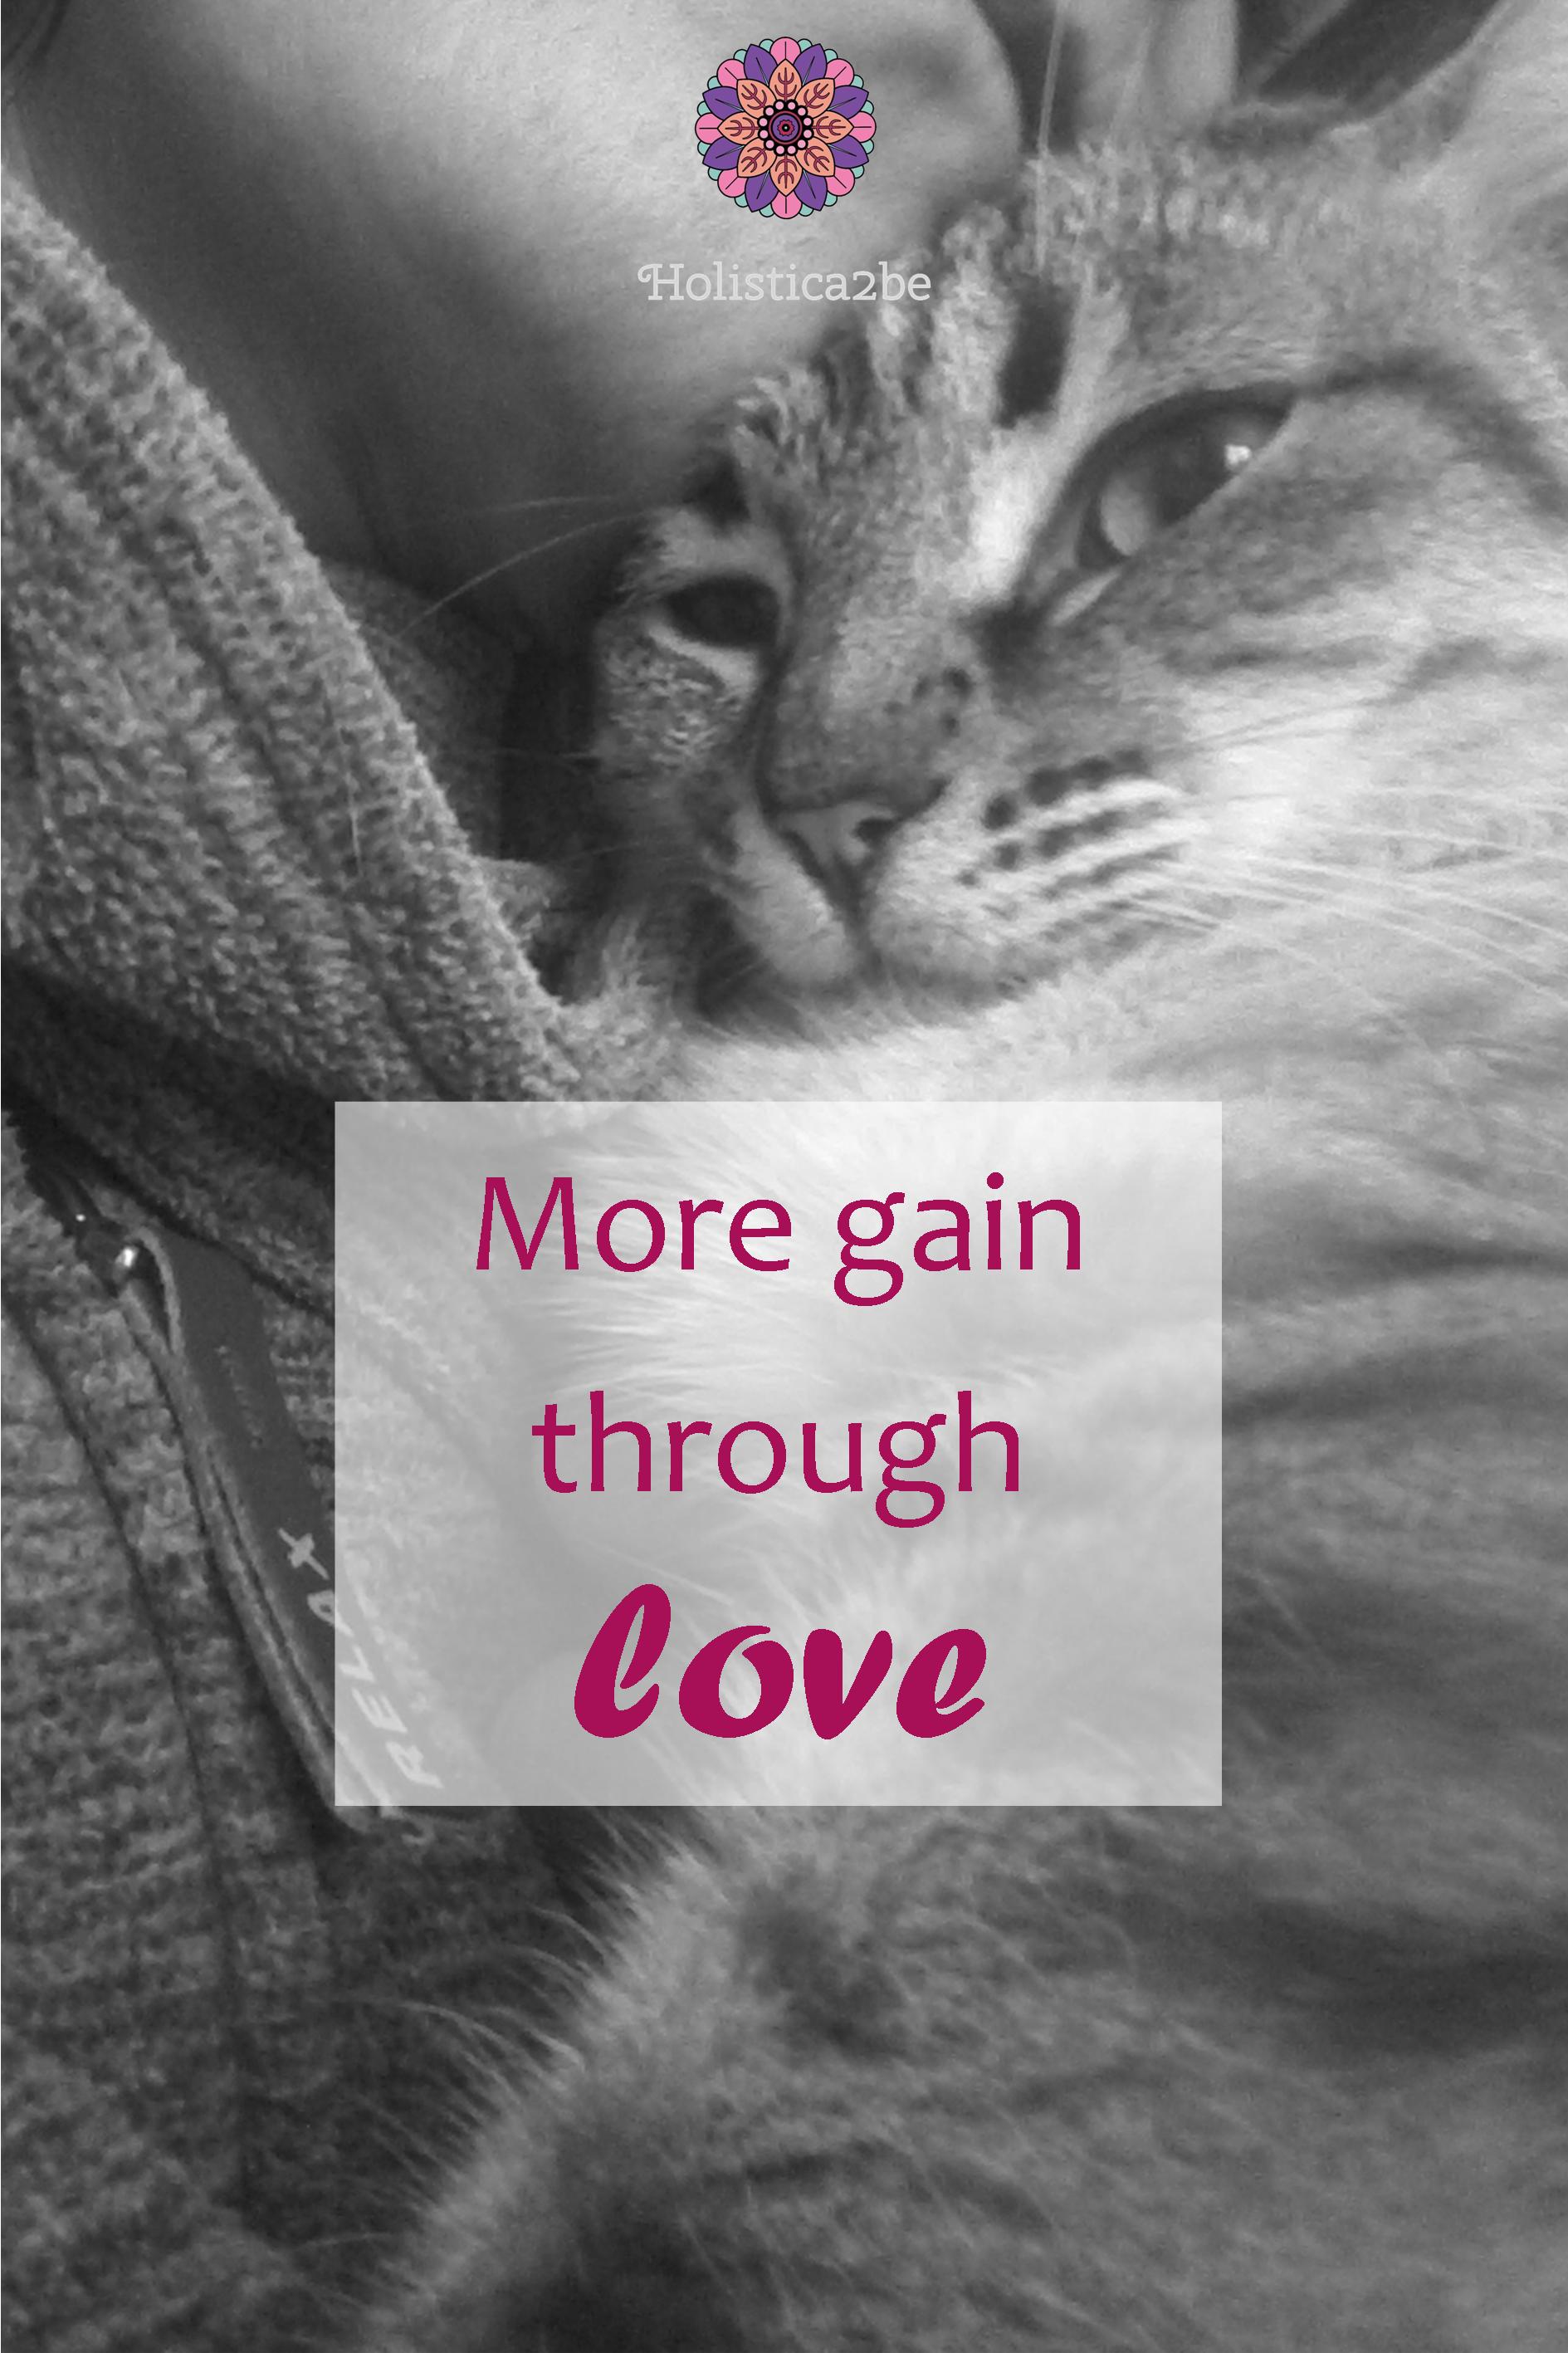 More gain through love